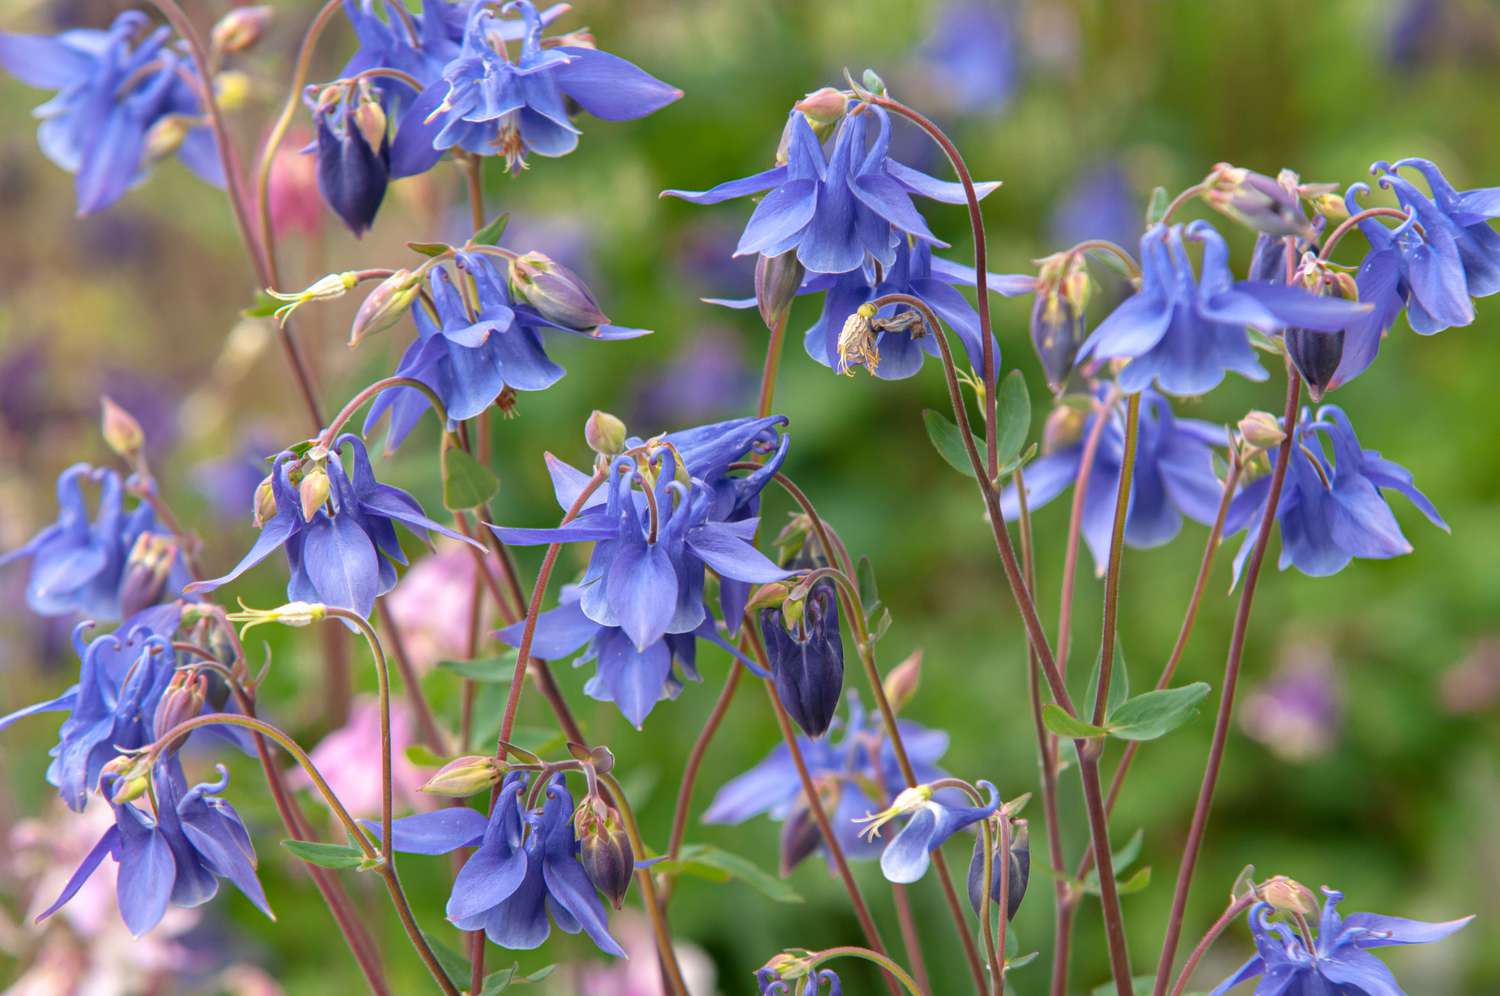 Akelei mit blau-violetten Blüten an dünnen roten Stängeln